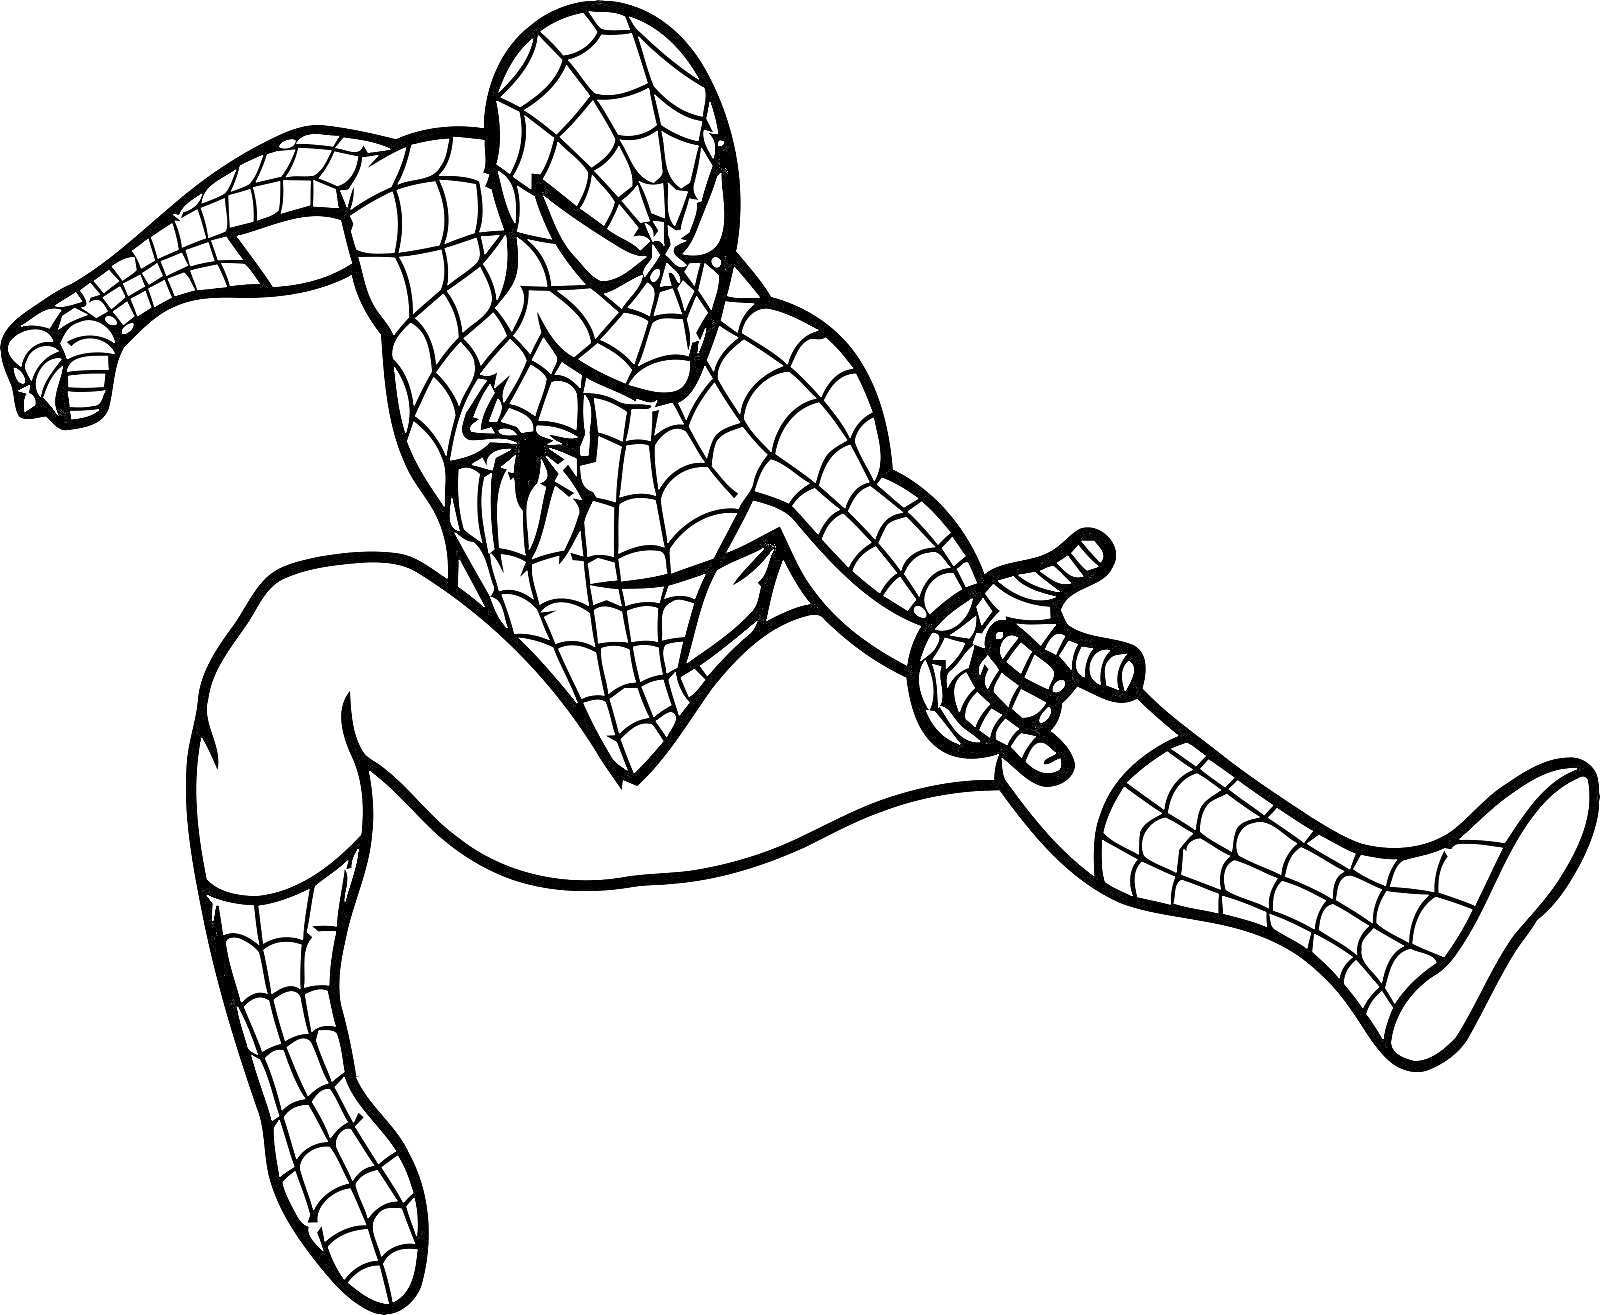 Человек Паук в прыжке с вытянутой правой рукой, в классическом костюме.